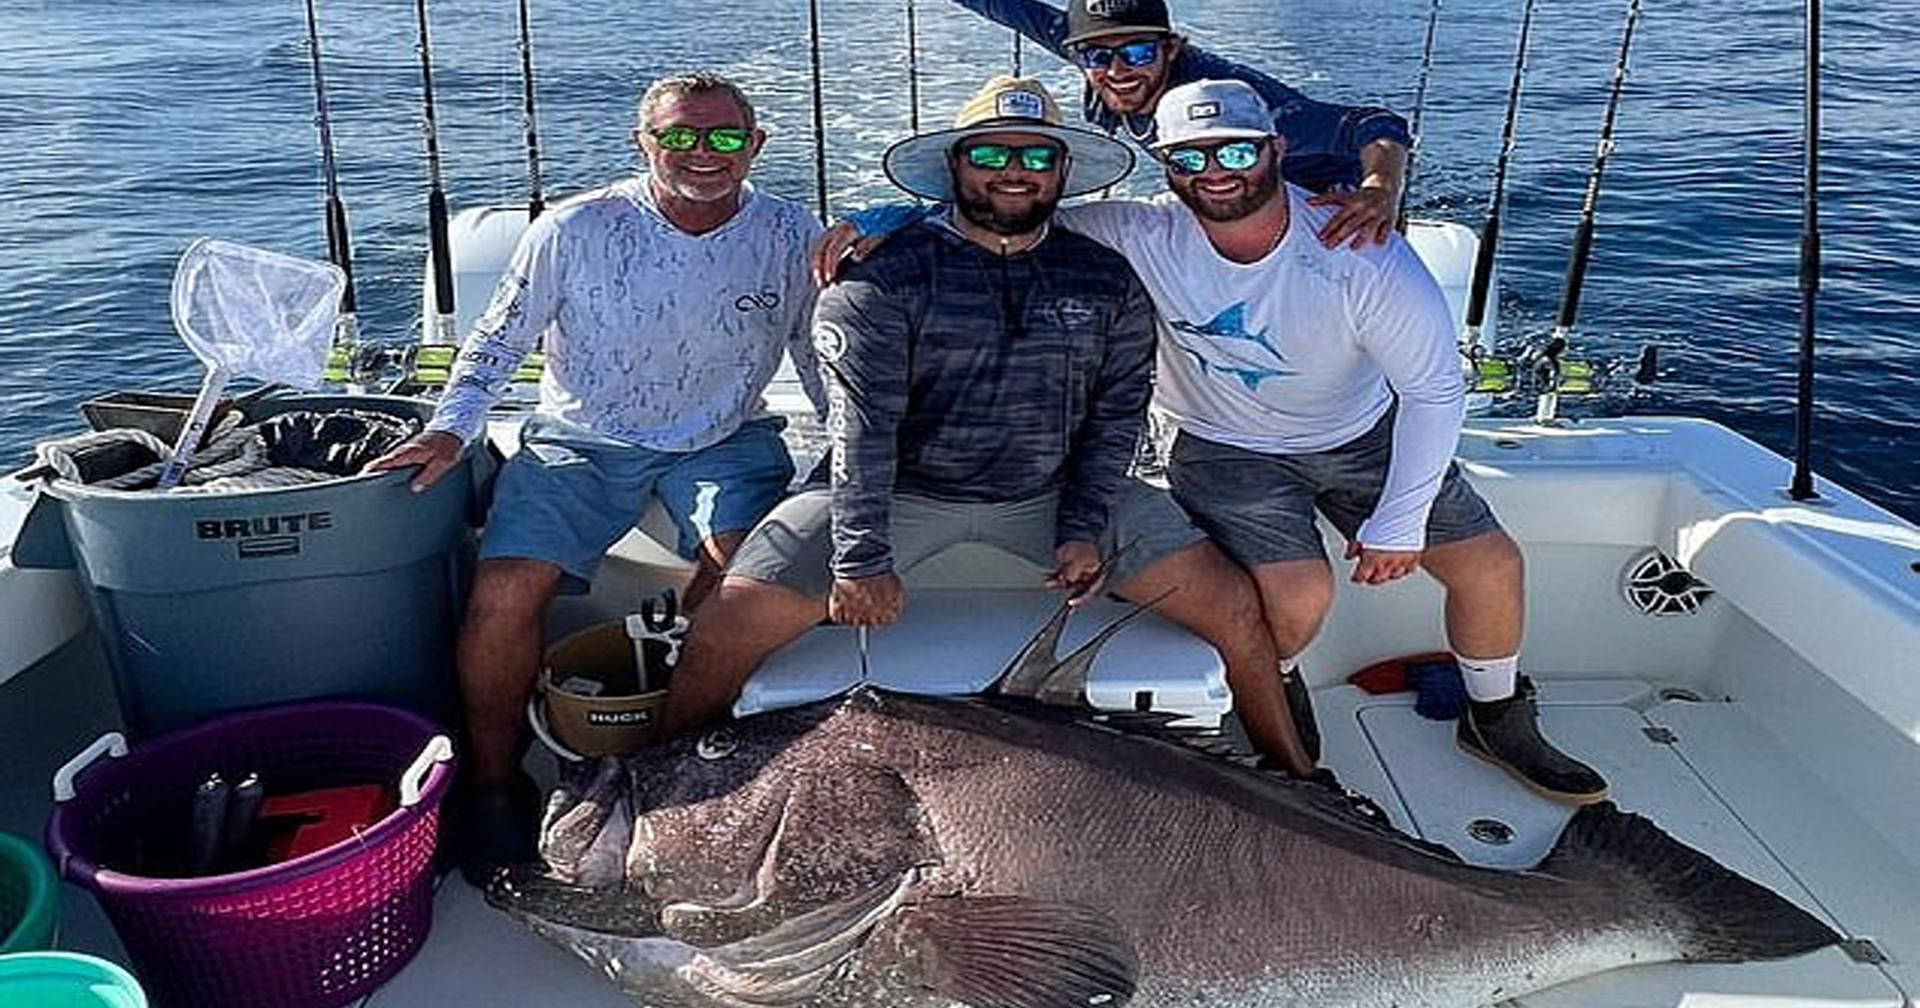 ลูกชาย Tom Cruise ชนะการแข่งขันตกปลาที่ฟลอริดา ได้ปลาเก๋าขนาด 2 เมตร